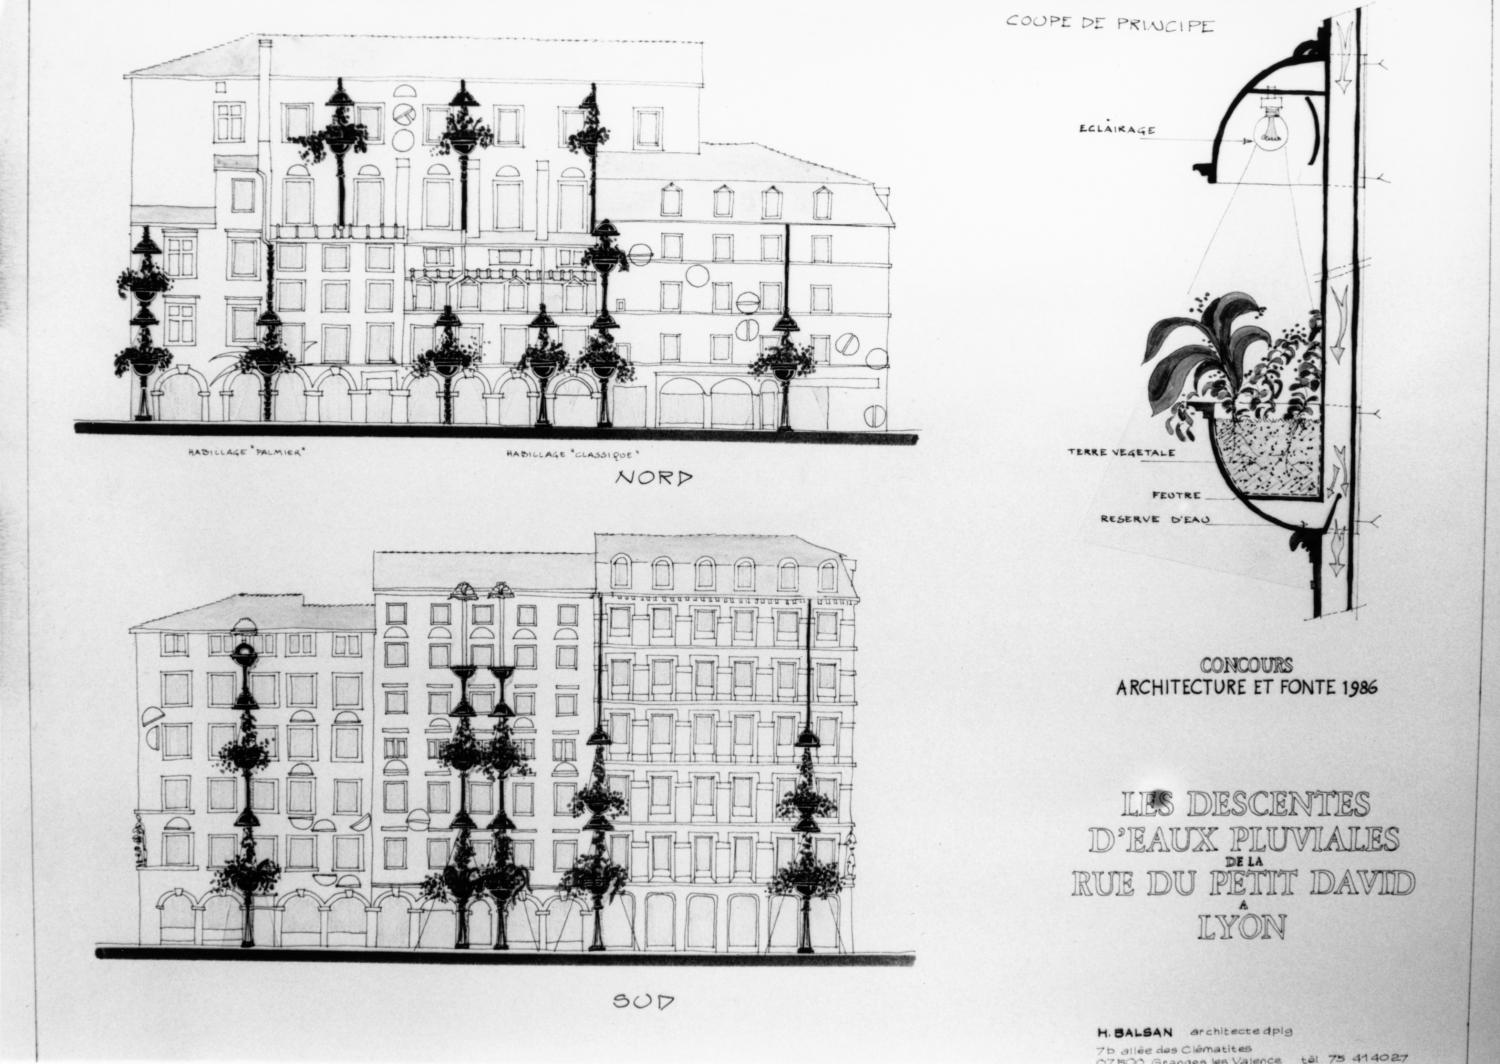 [Concours "Architecture et fonte" (1986). Les descentes d'eaux pluviales de la rue du Petit-David]